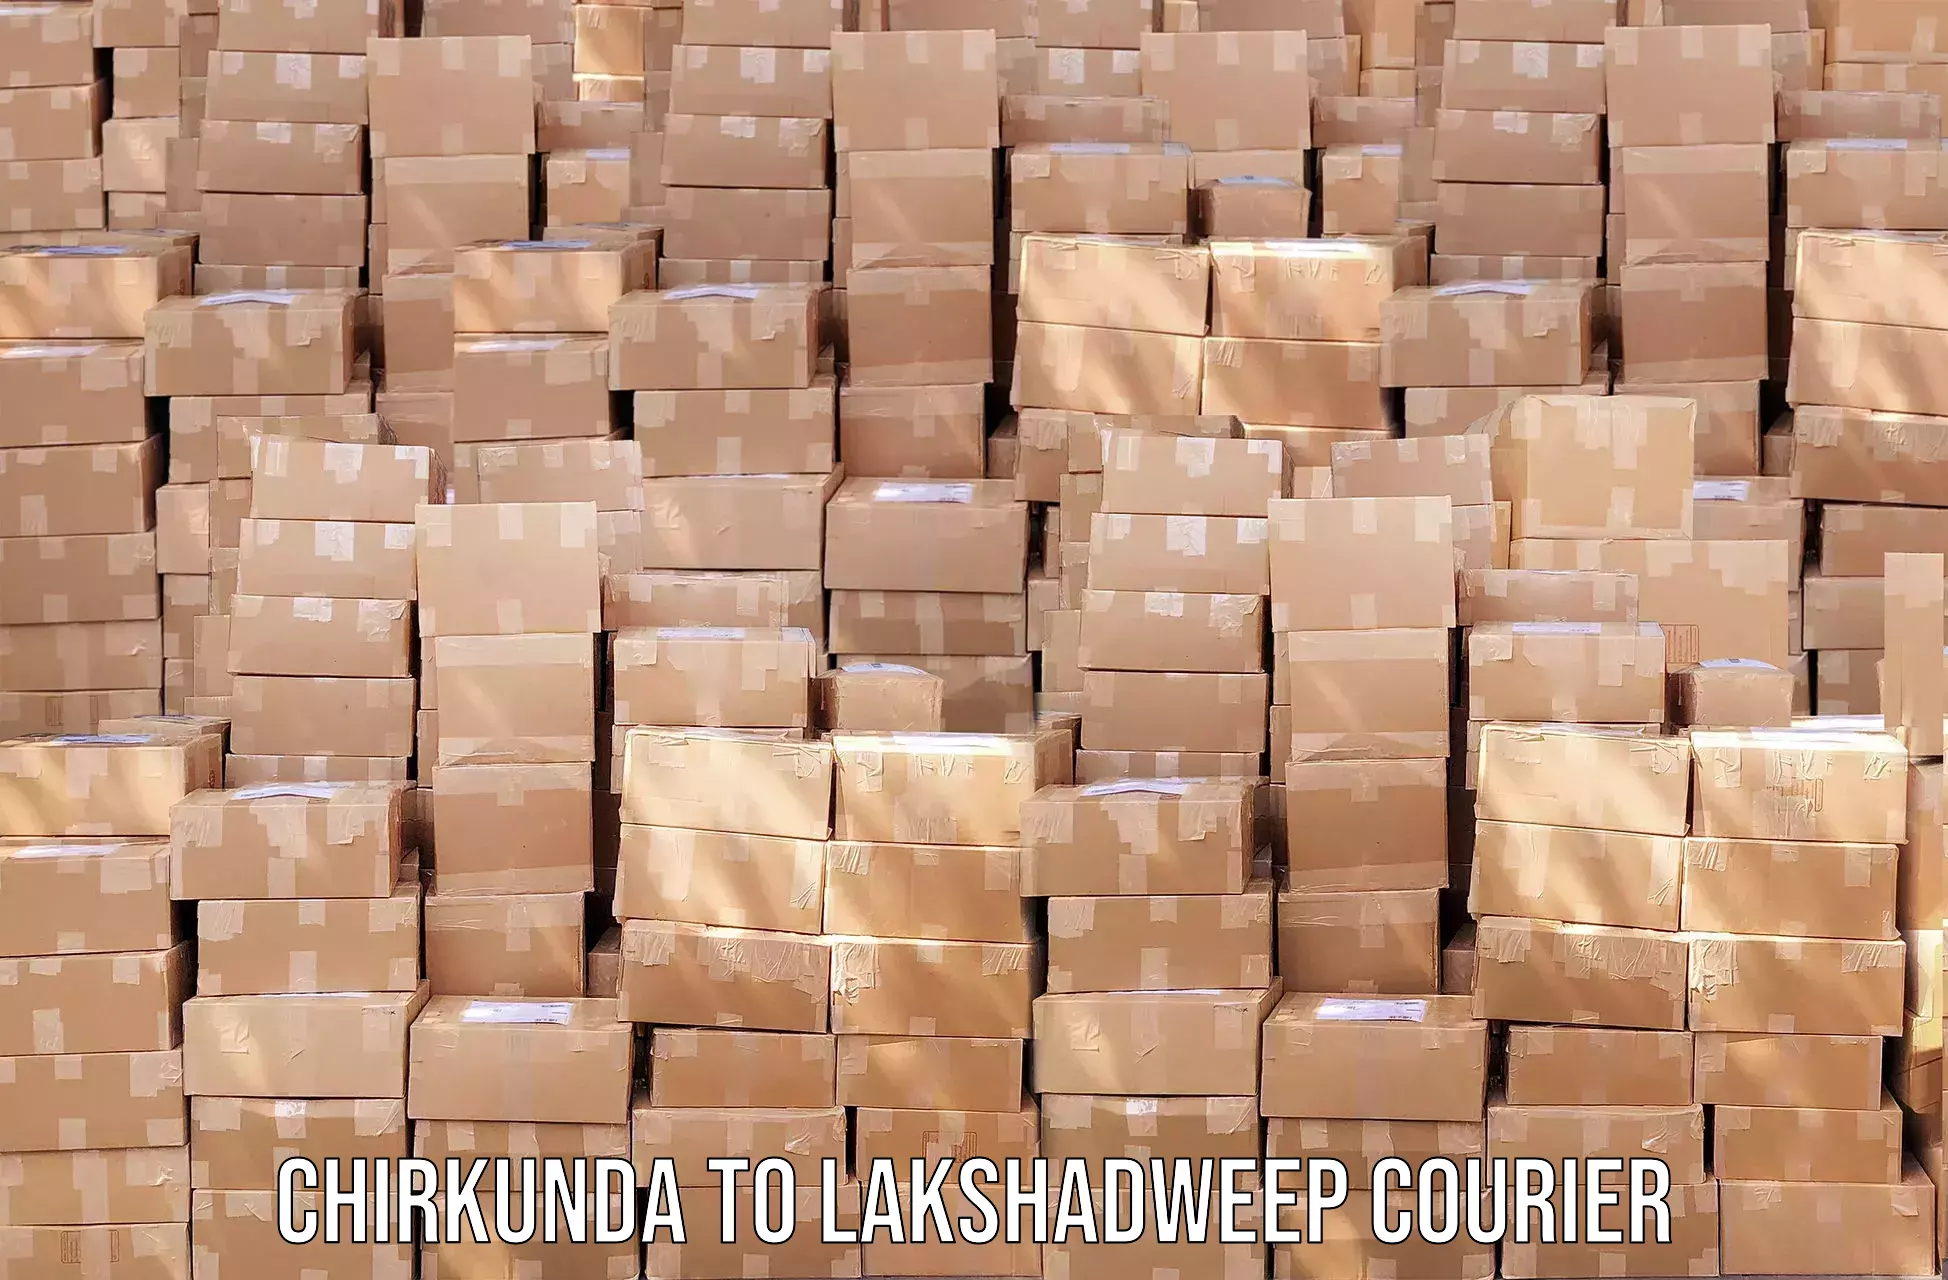 Courier service efficiency in Chirkunda to Lakshadweep